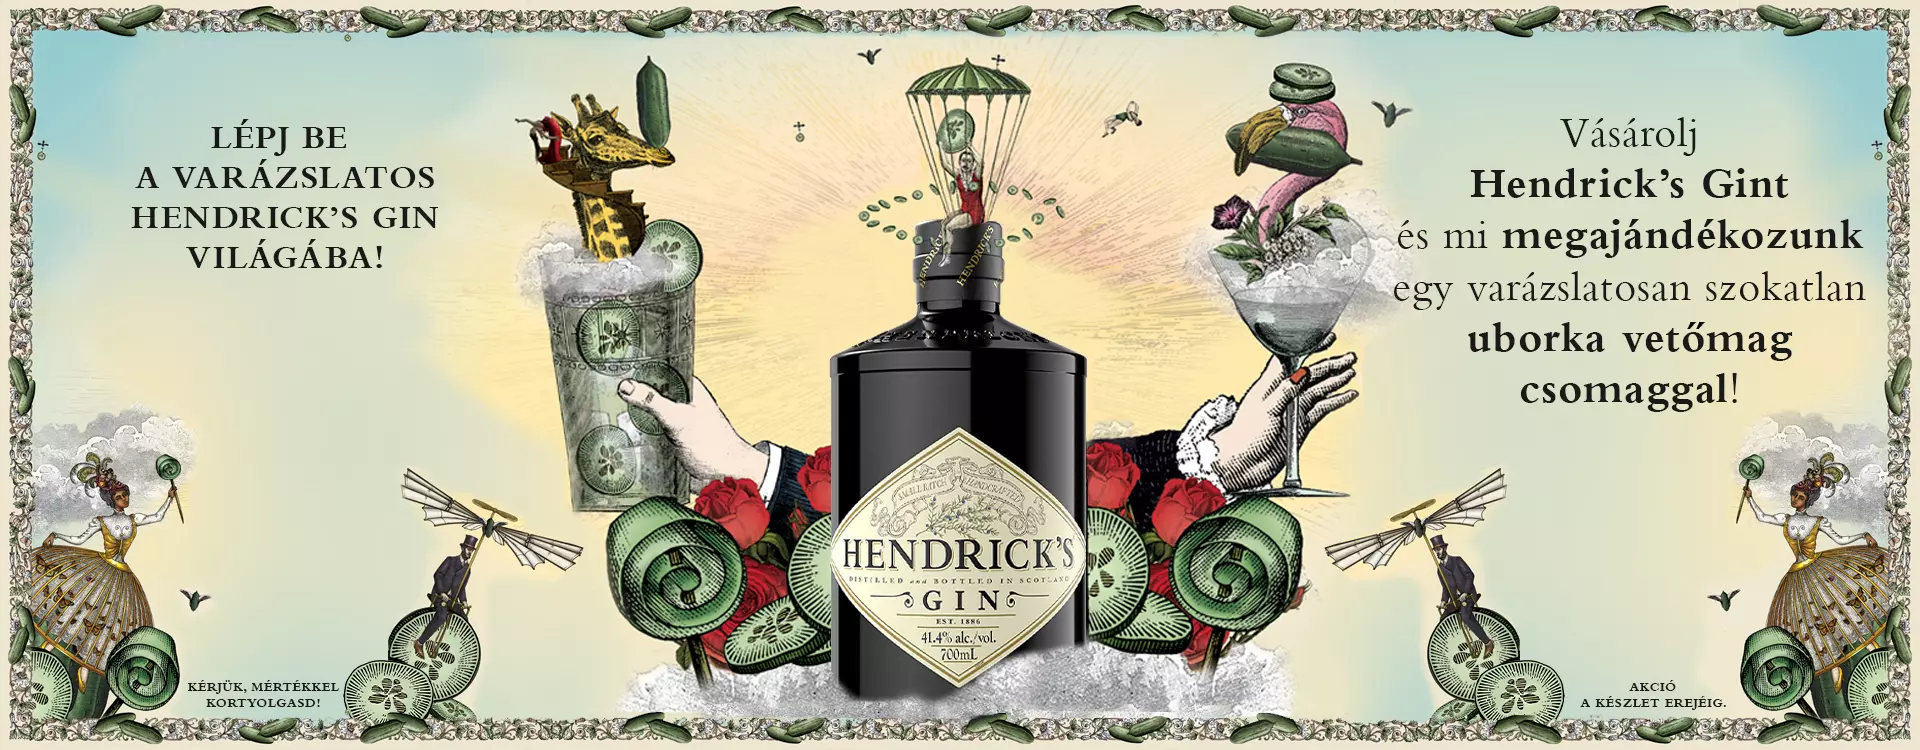 Hendicks's uborka vetőmag